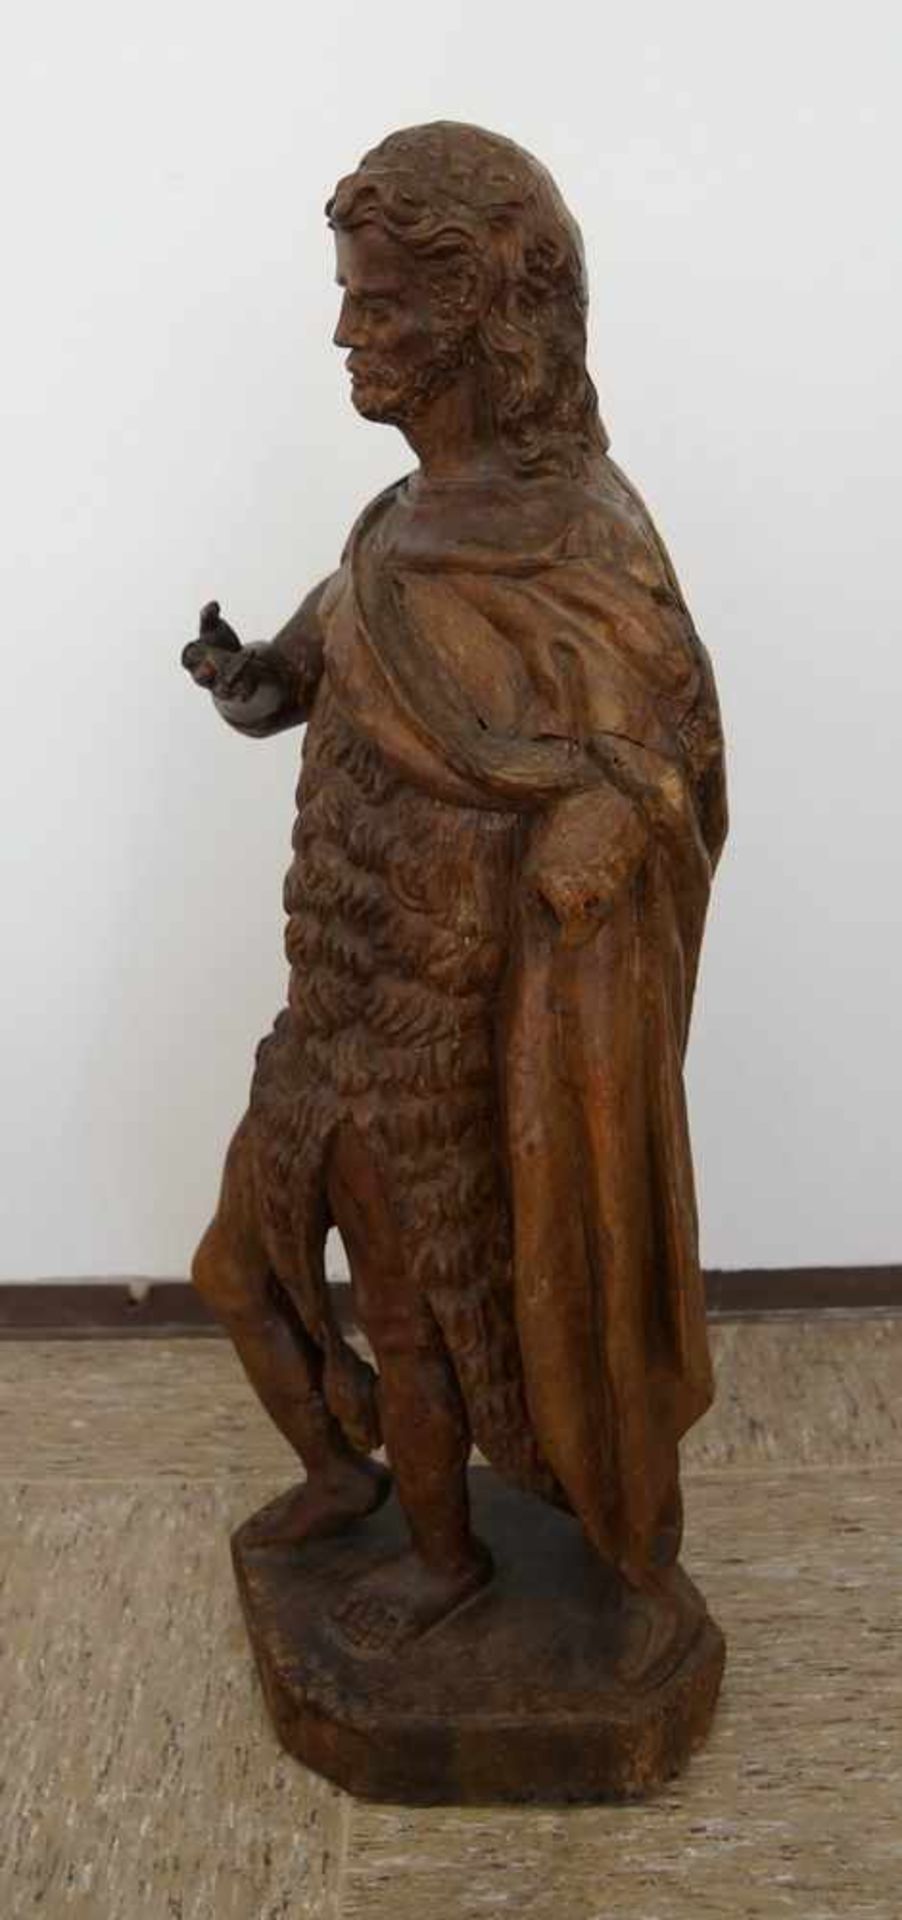 Grosse, in Holz geschnitzte Skulptur des heiligen Johannes, H 105cm- - -24.00 % buyer's premium on - Bild 4 aus 11